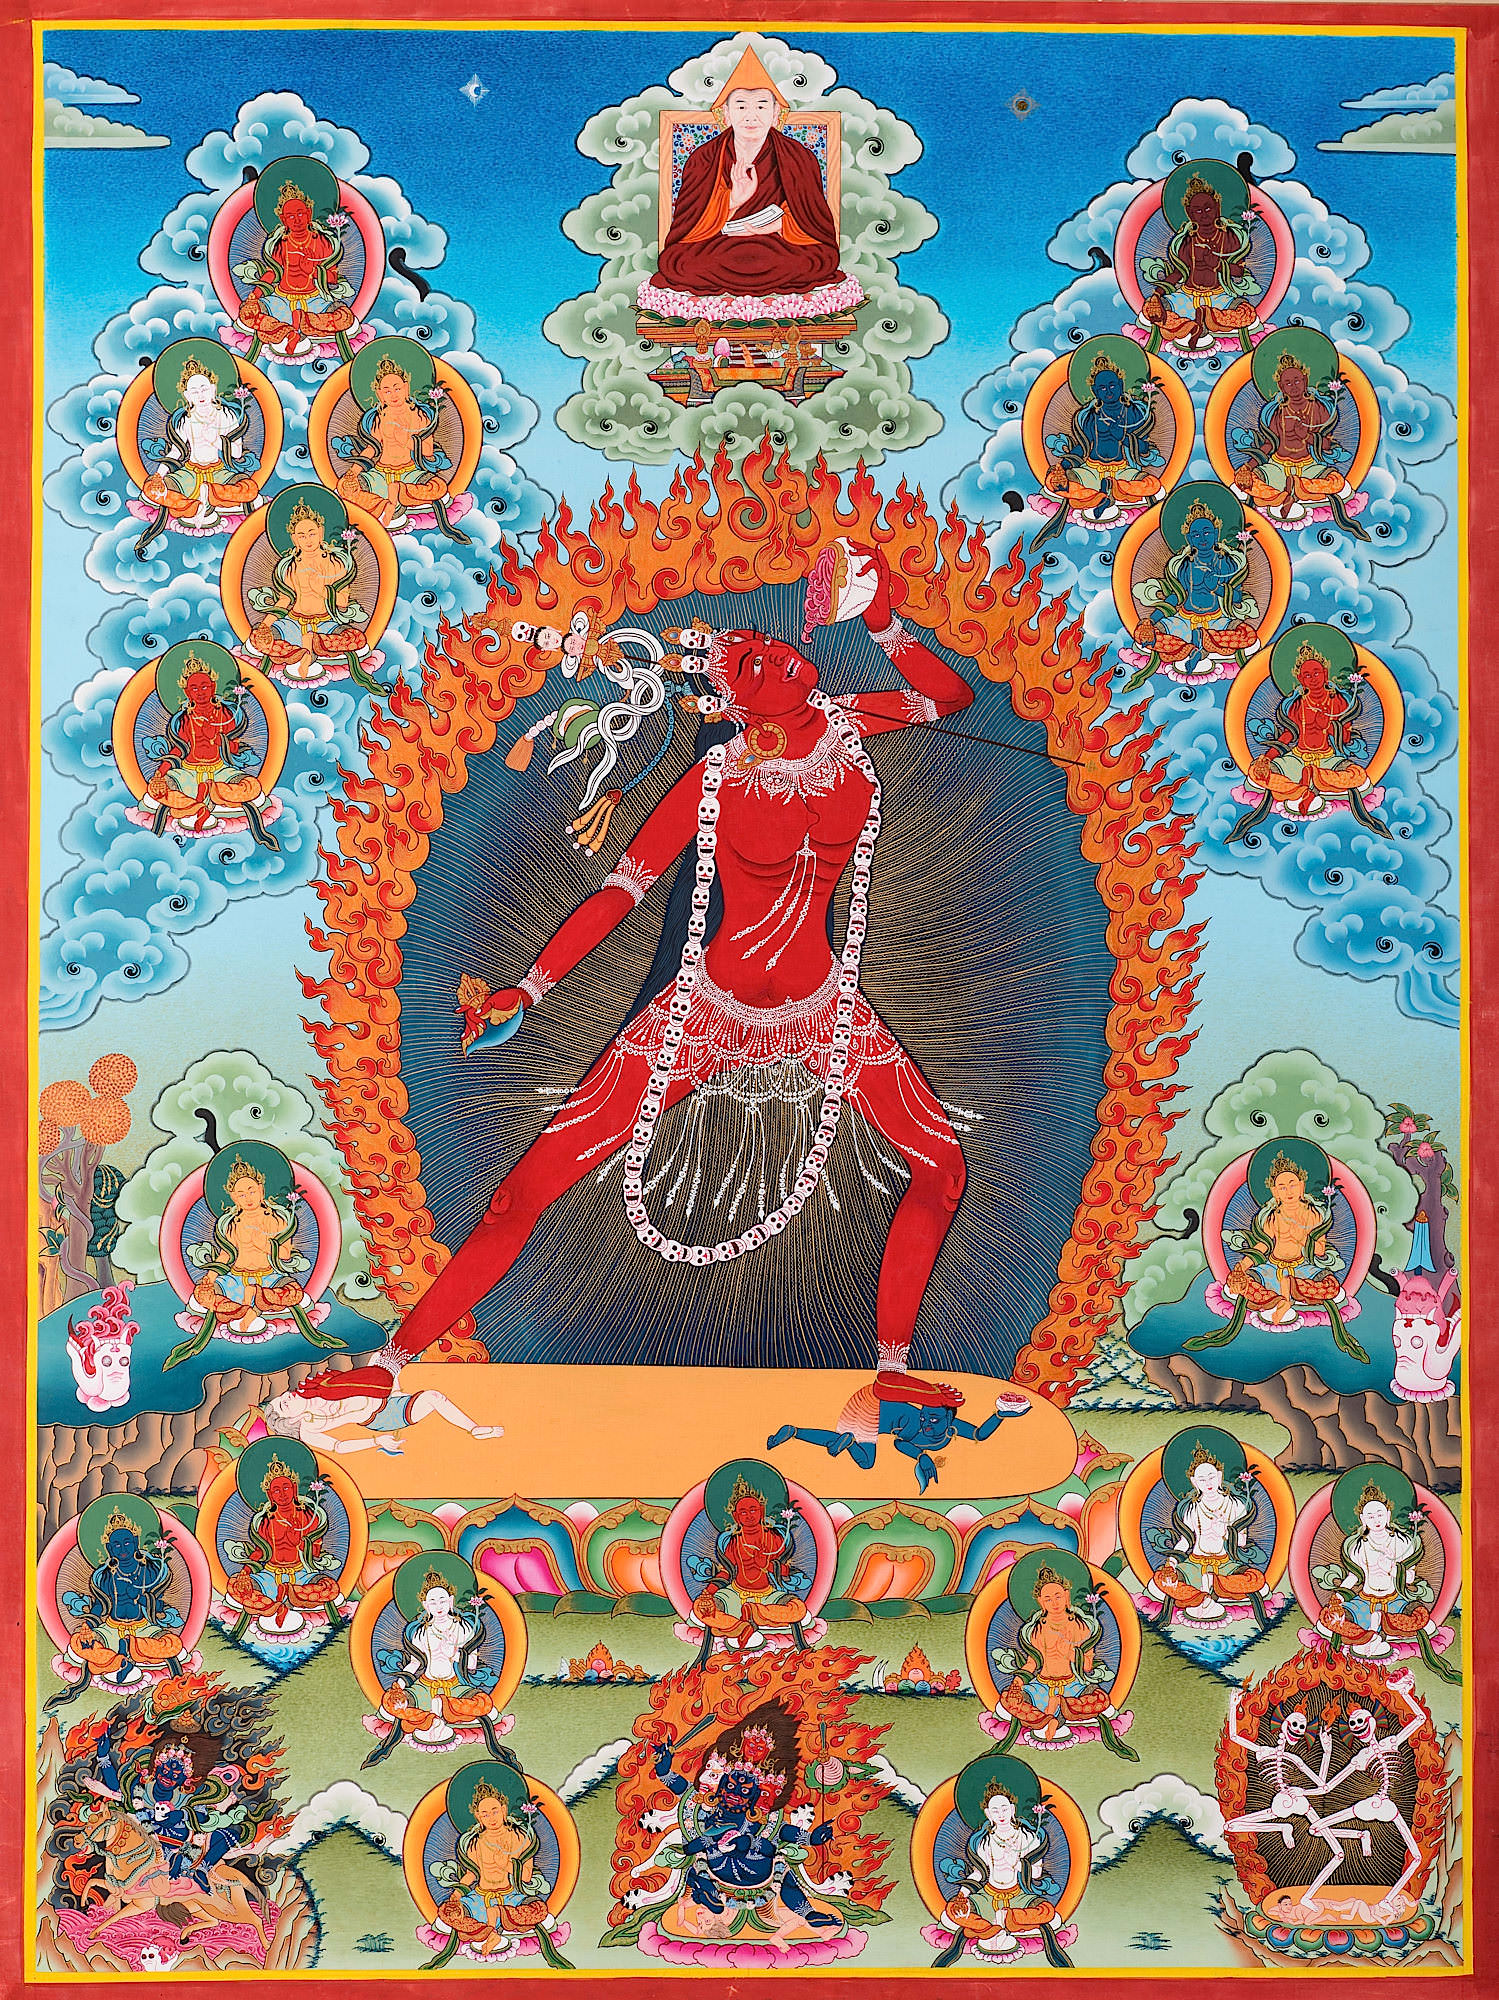 The 
Vajra Yogini Image